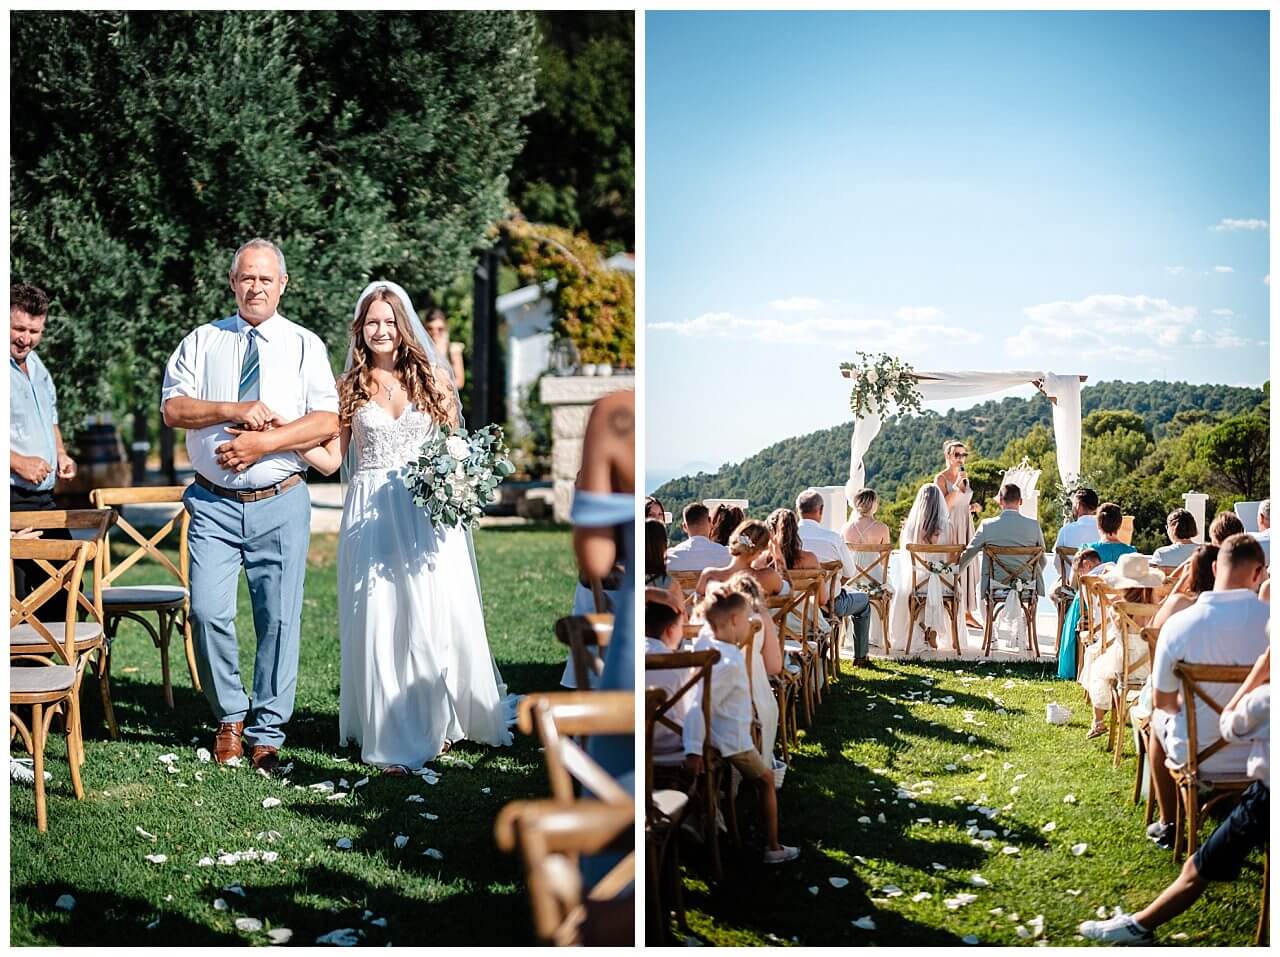 Braut mit Vater und Brautpaar bei freier Trauung am Pool in einer privaten Villa in Kroatien